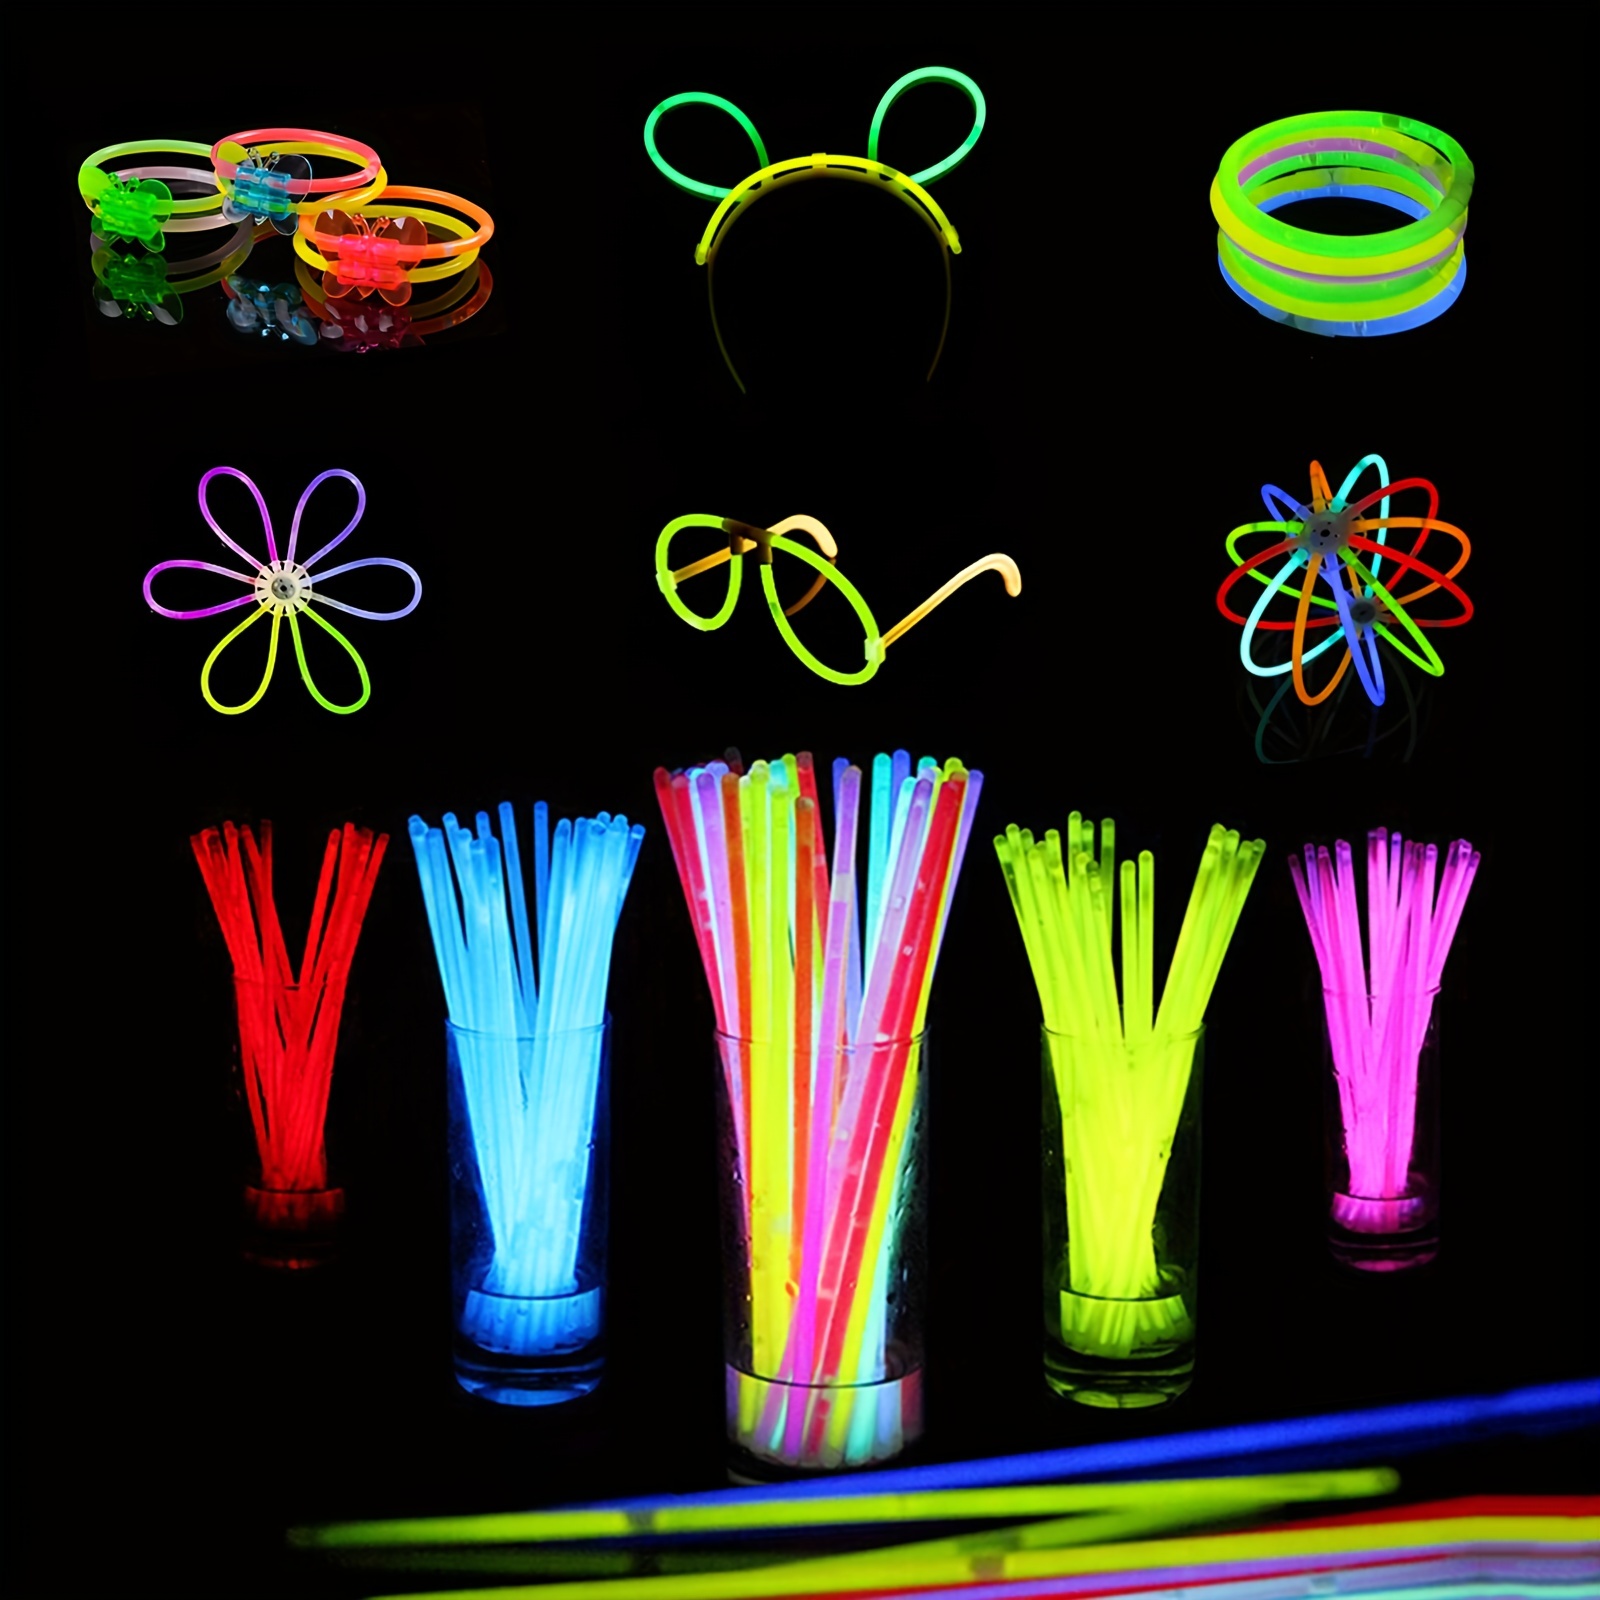 Glow Stick Bracelets - Pack of 100 